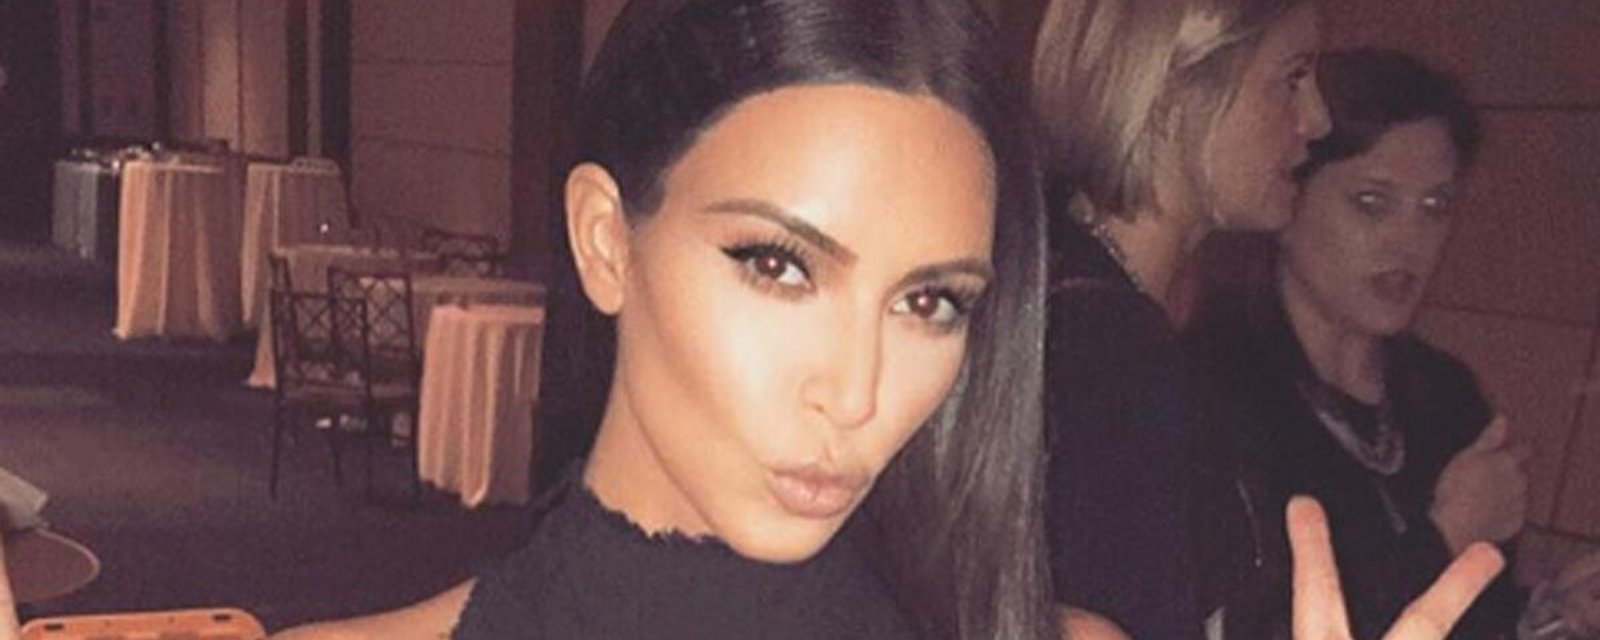 La mère de Kim Kardashian publie des photos très surprenantes de sa fille...